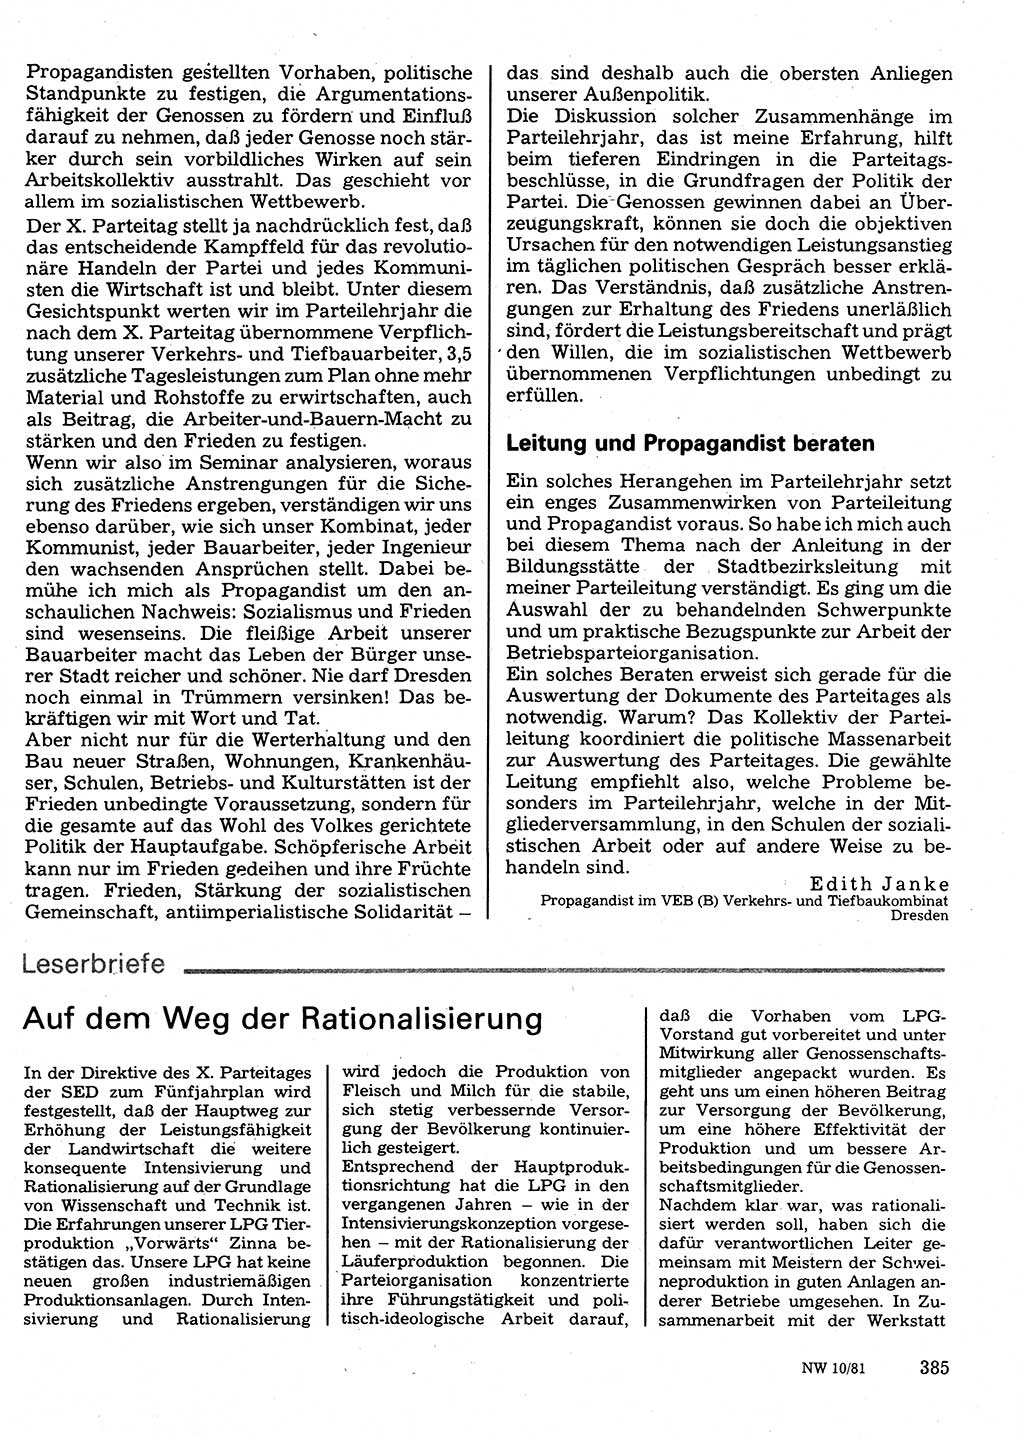 Neuer Weg (NW), Organ des Zentralkomitees (ZK) der SED (Sozialistische Einheitspartei Deutschlands) für Fragen des Parteilebens, 36. Jahrgang [Deutsche Demokratische Republik (DDR)] 1981, Seite 385 (NW ZK SED DDR 1981, S. 385)